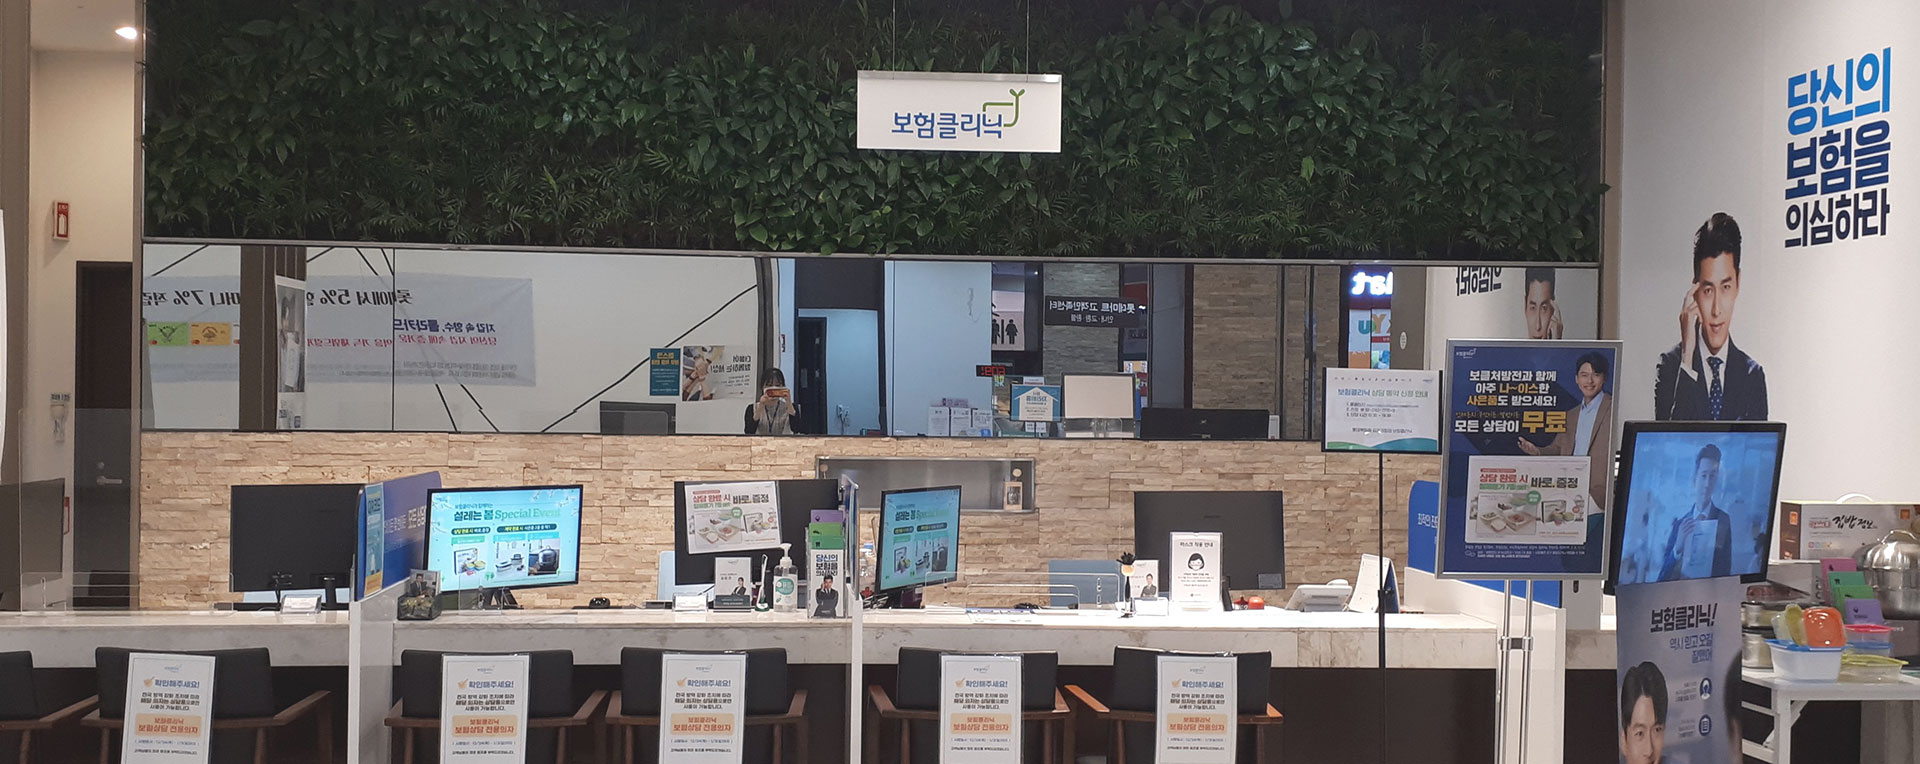 보험클리닉샵 미리보기 - 김포공항